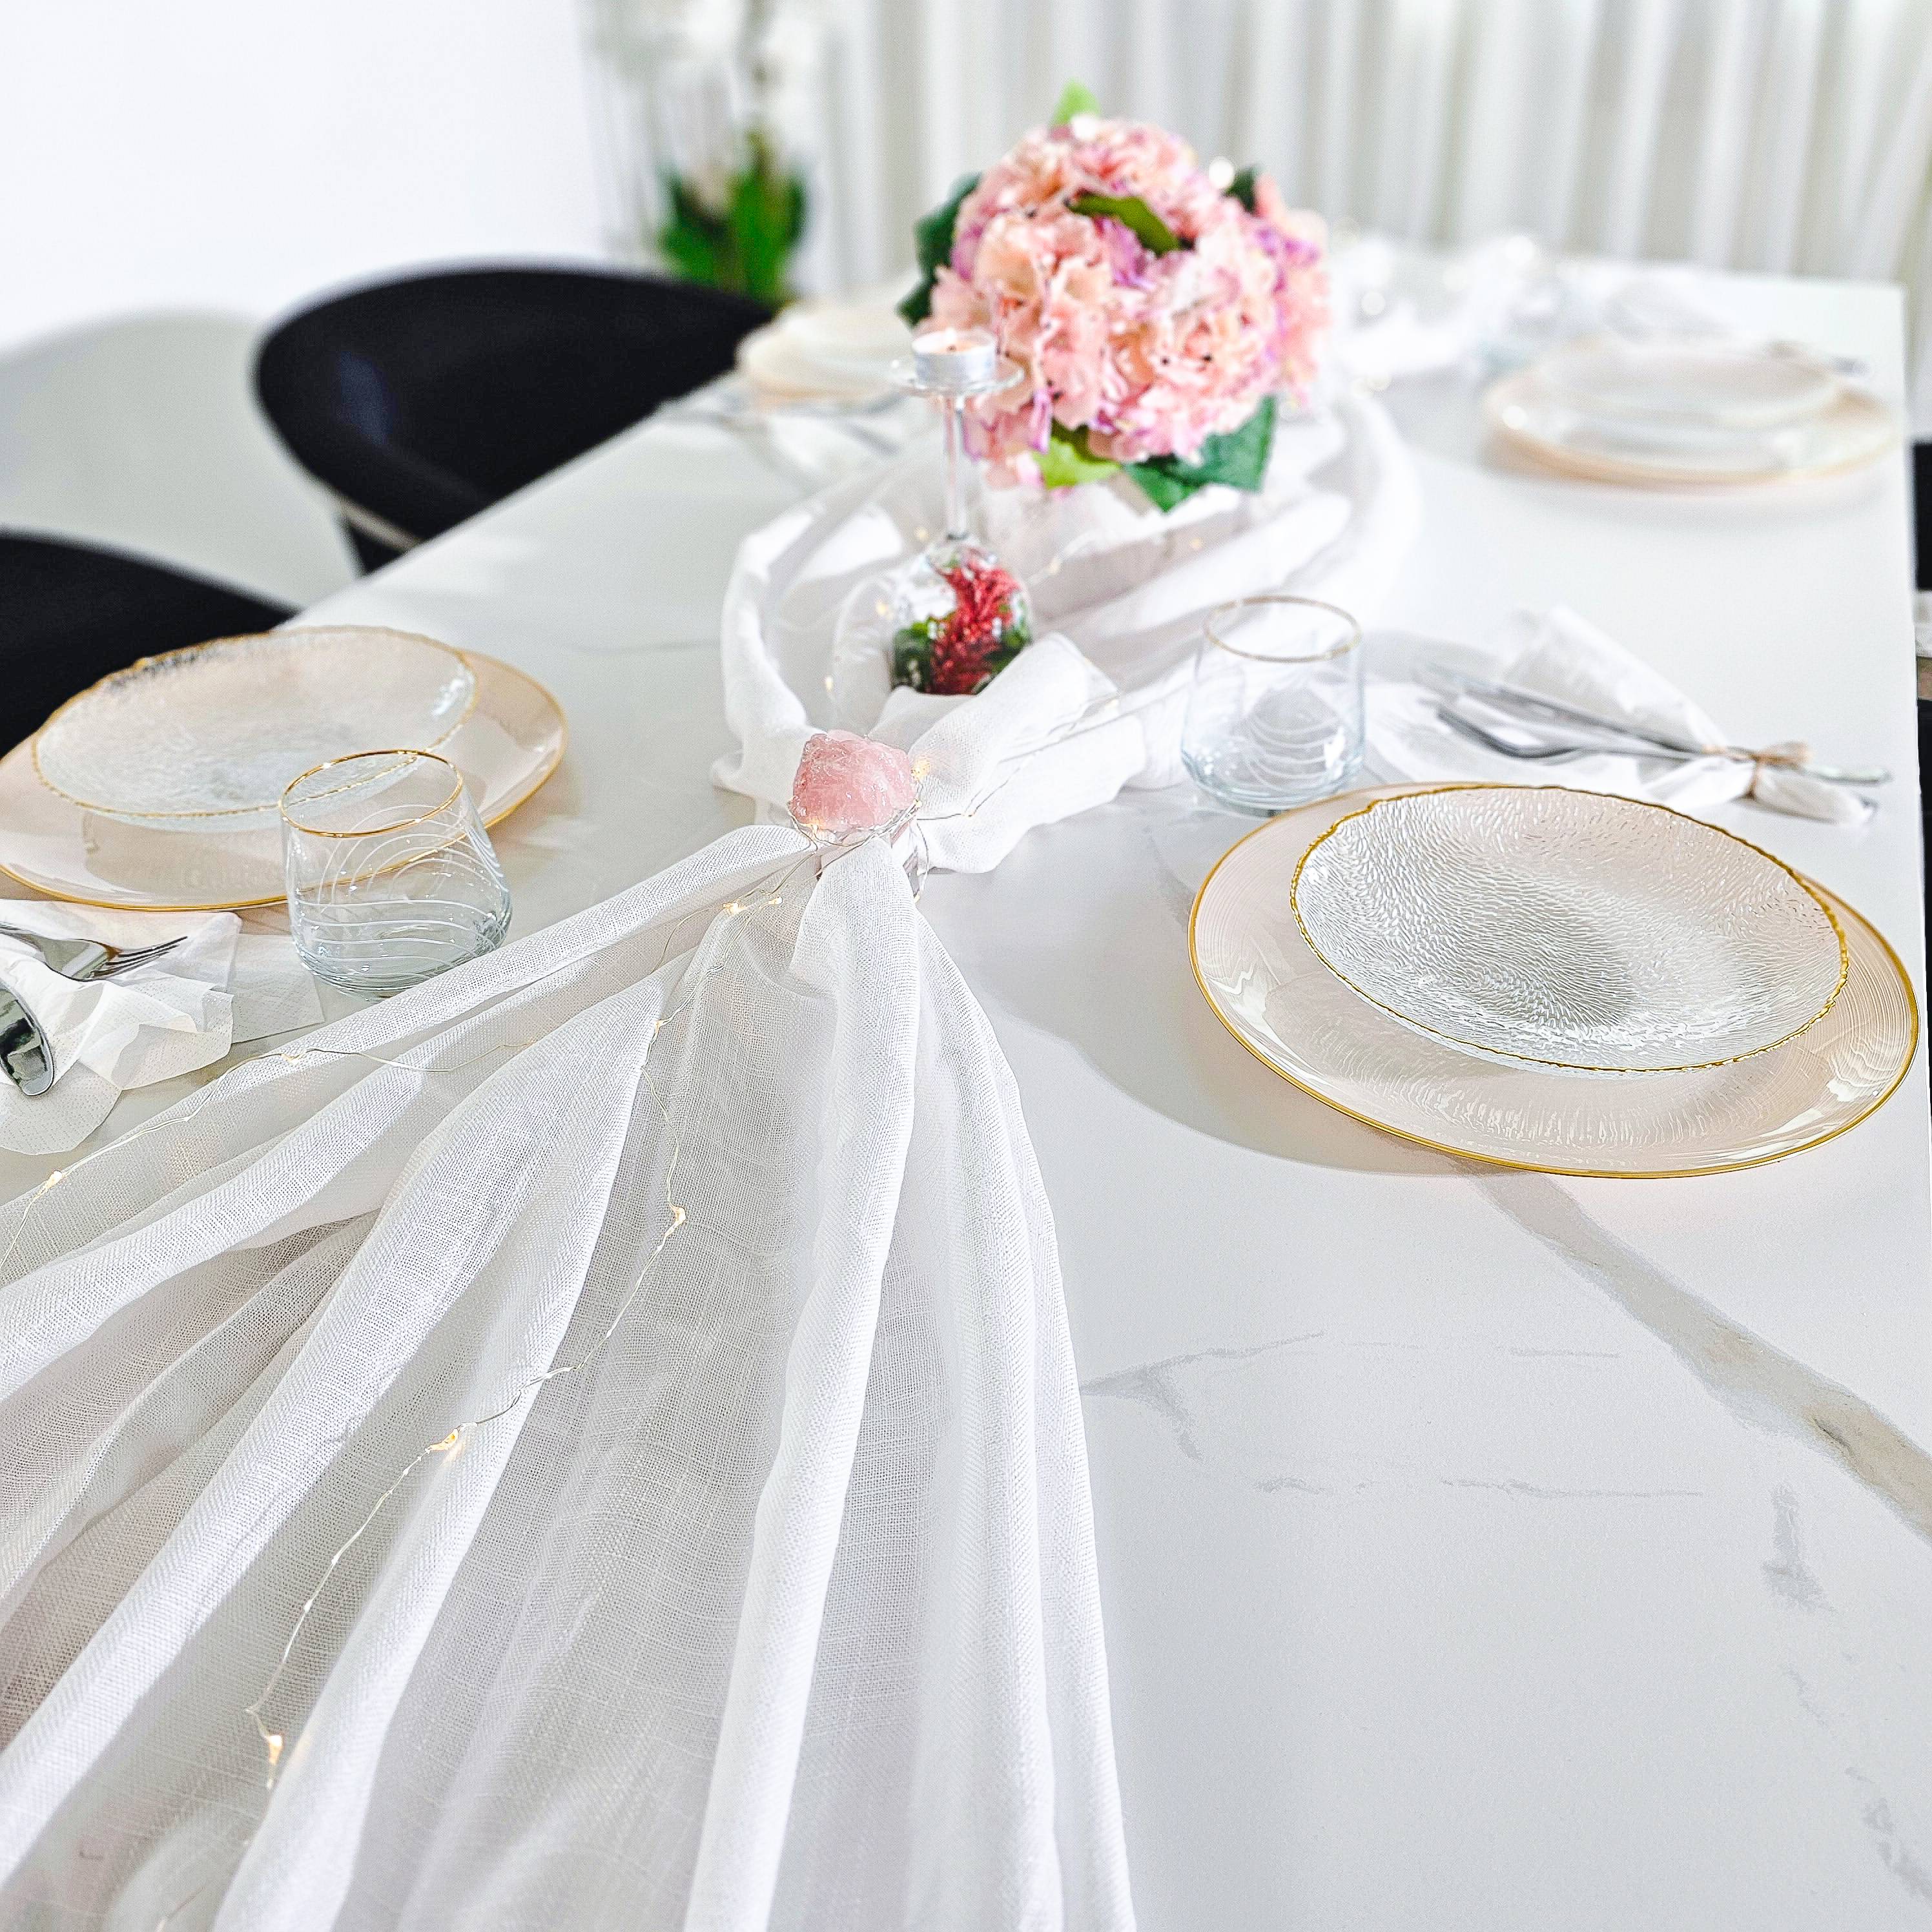 Bild på ett vitt bord som är fint dukat inför exempelvis en middagsbjudning.